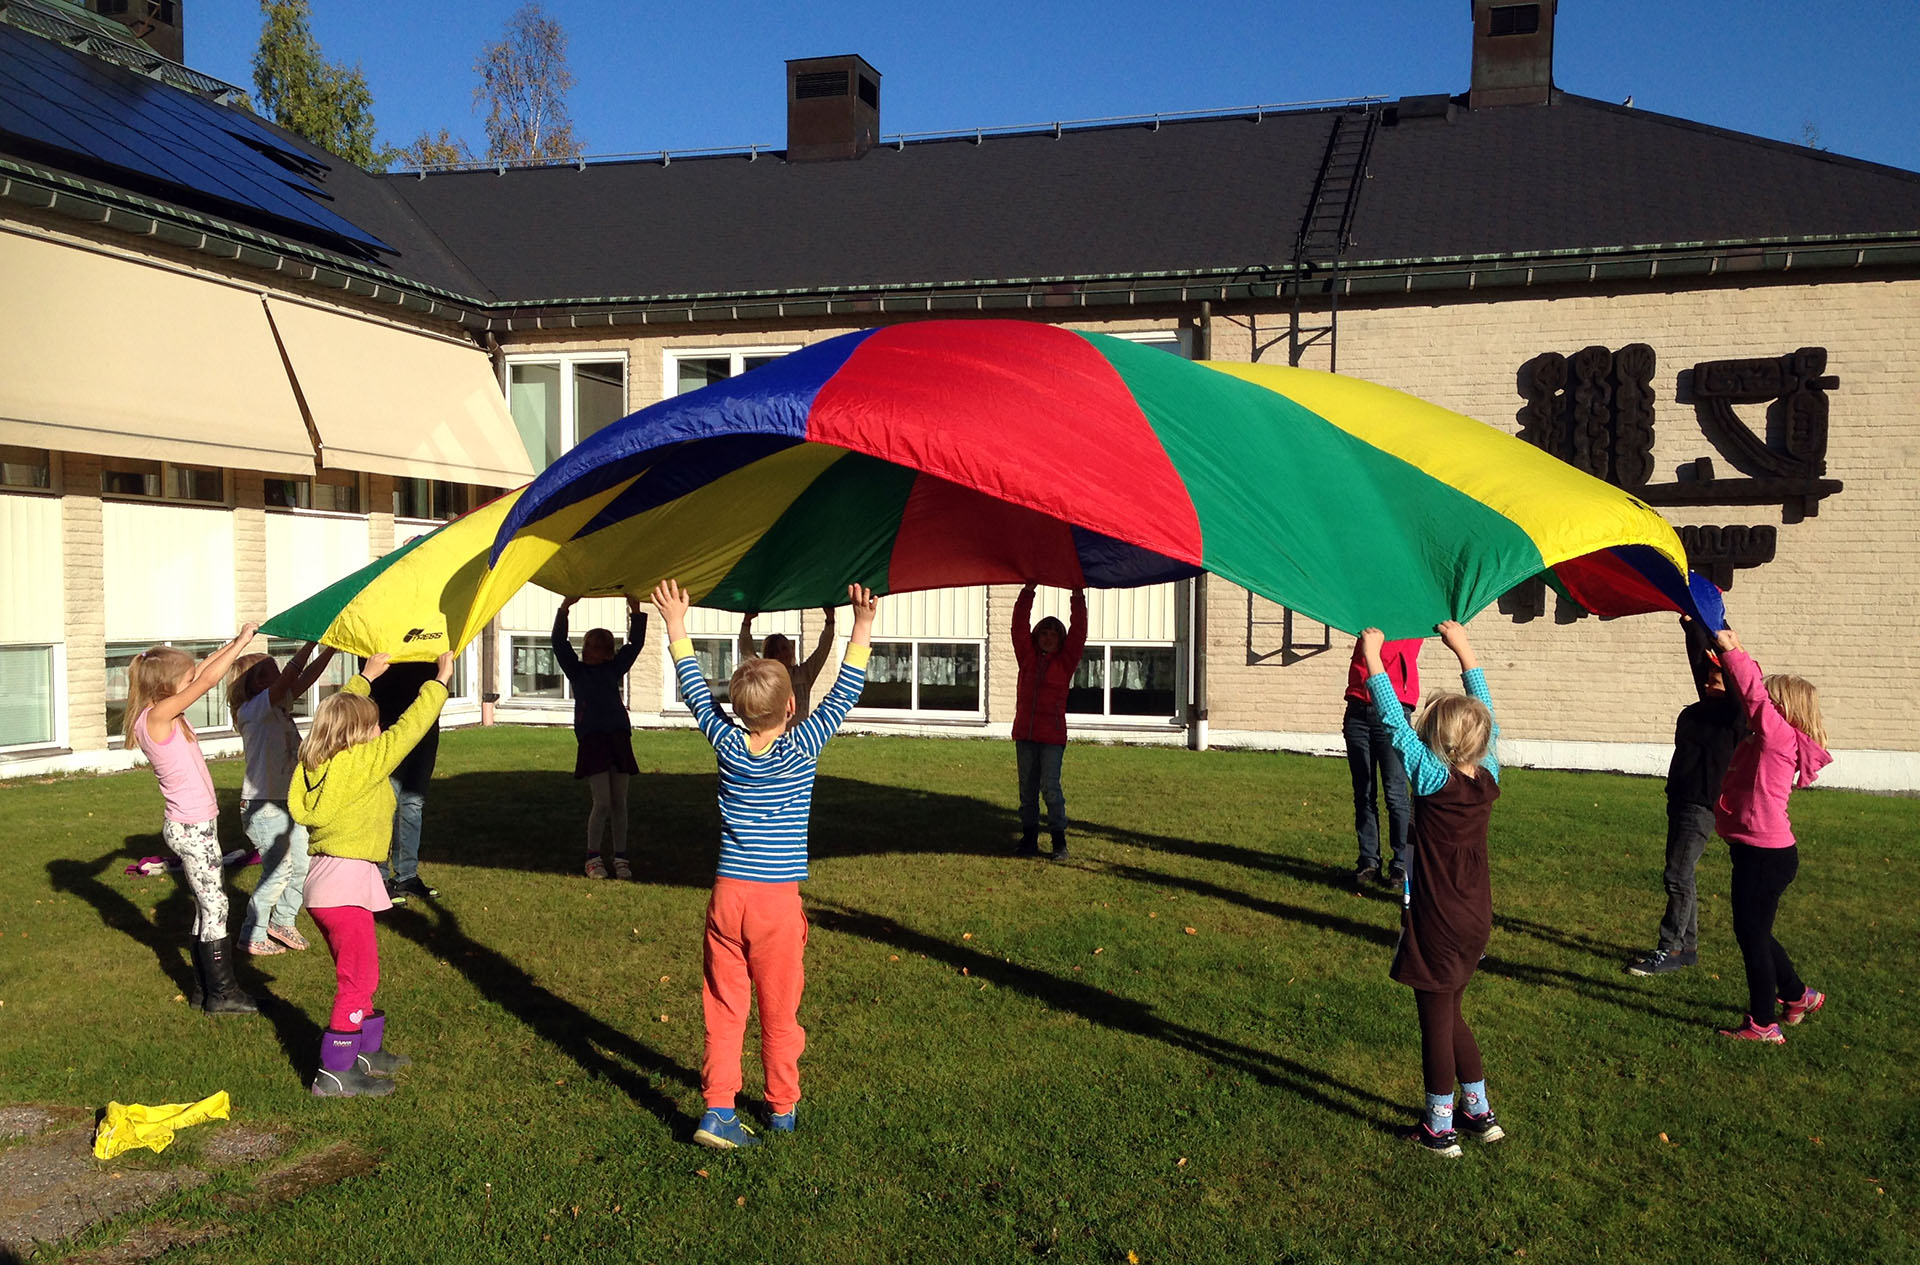 Tio barn och en ledare leker med en stor färggrann "fallskärm". De hjälps åt att kasta upp den i luften.De är utomhus på en gräsmatta.